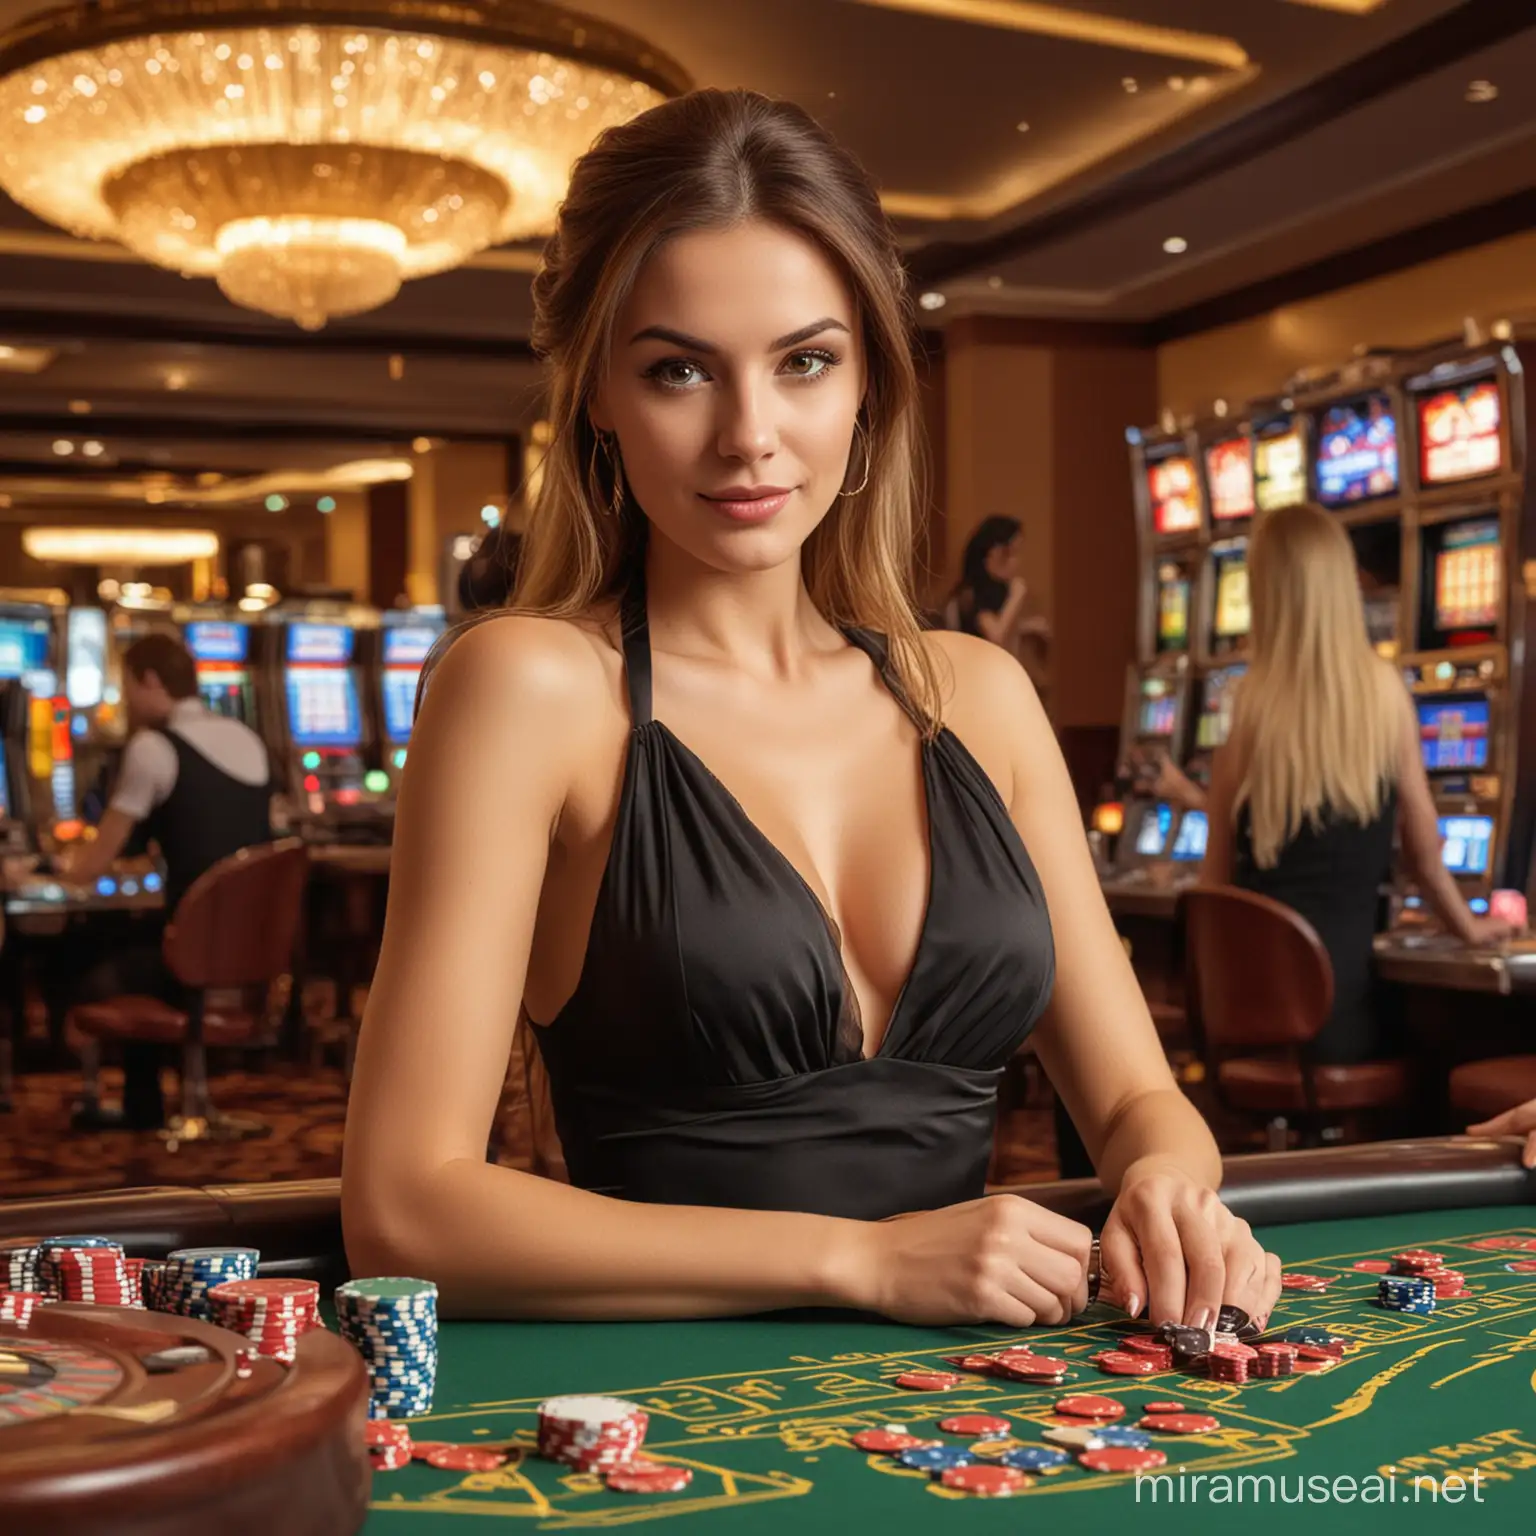 Elegant Woman Enjoying HighStakes Casino Action